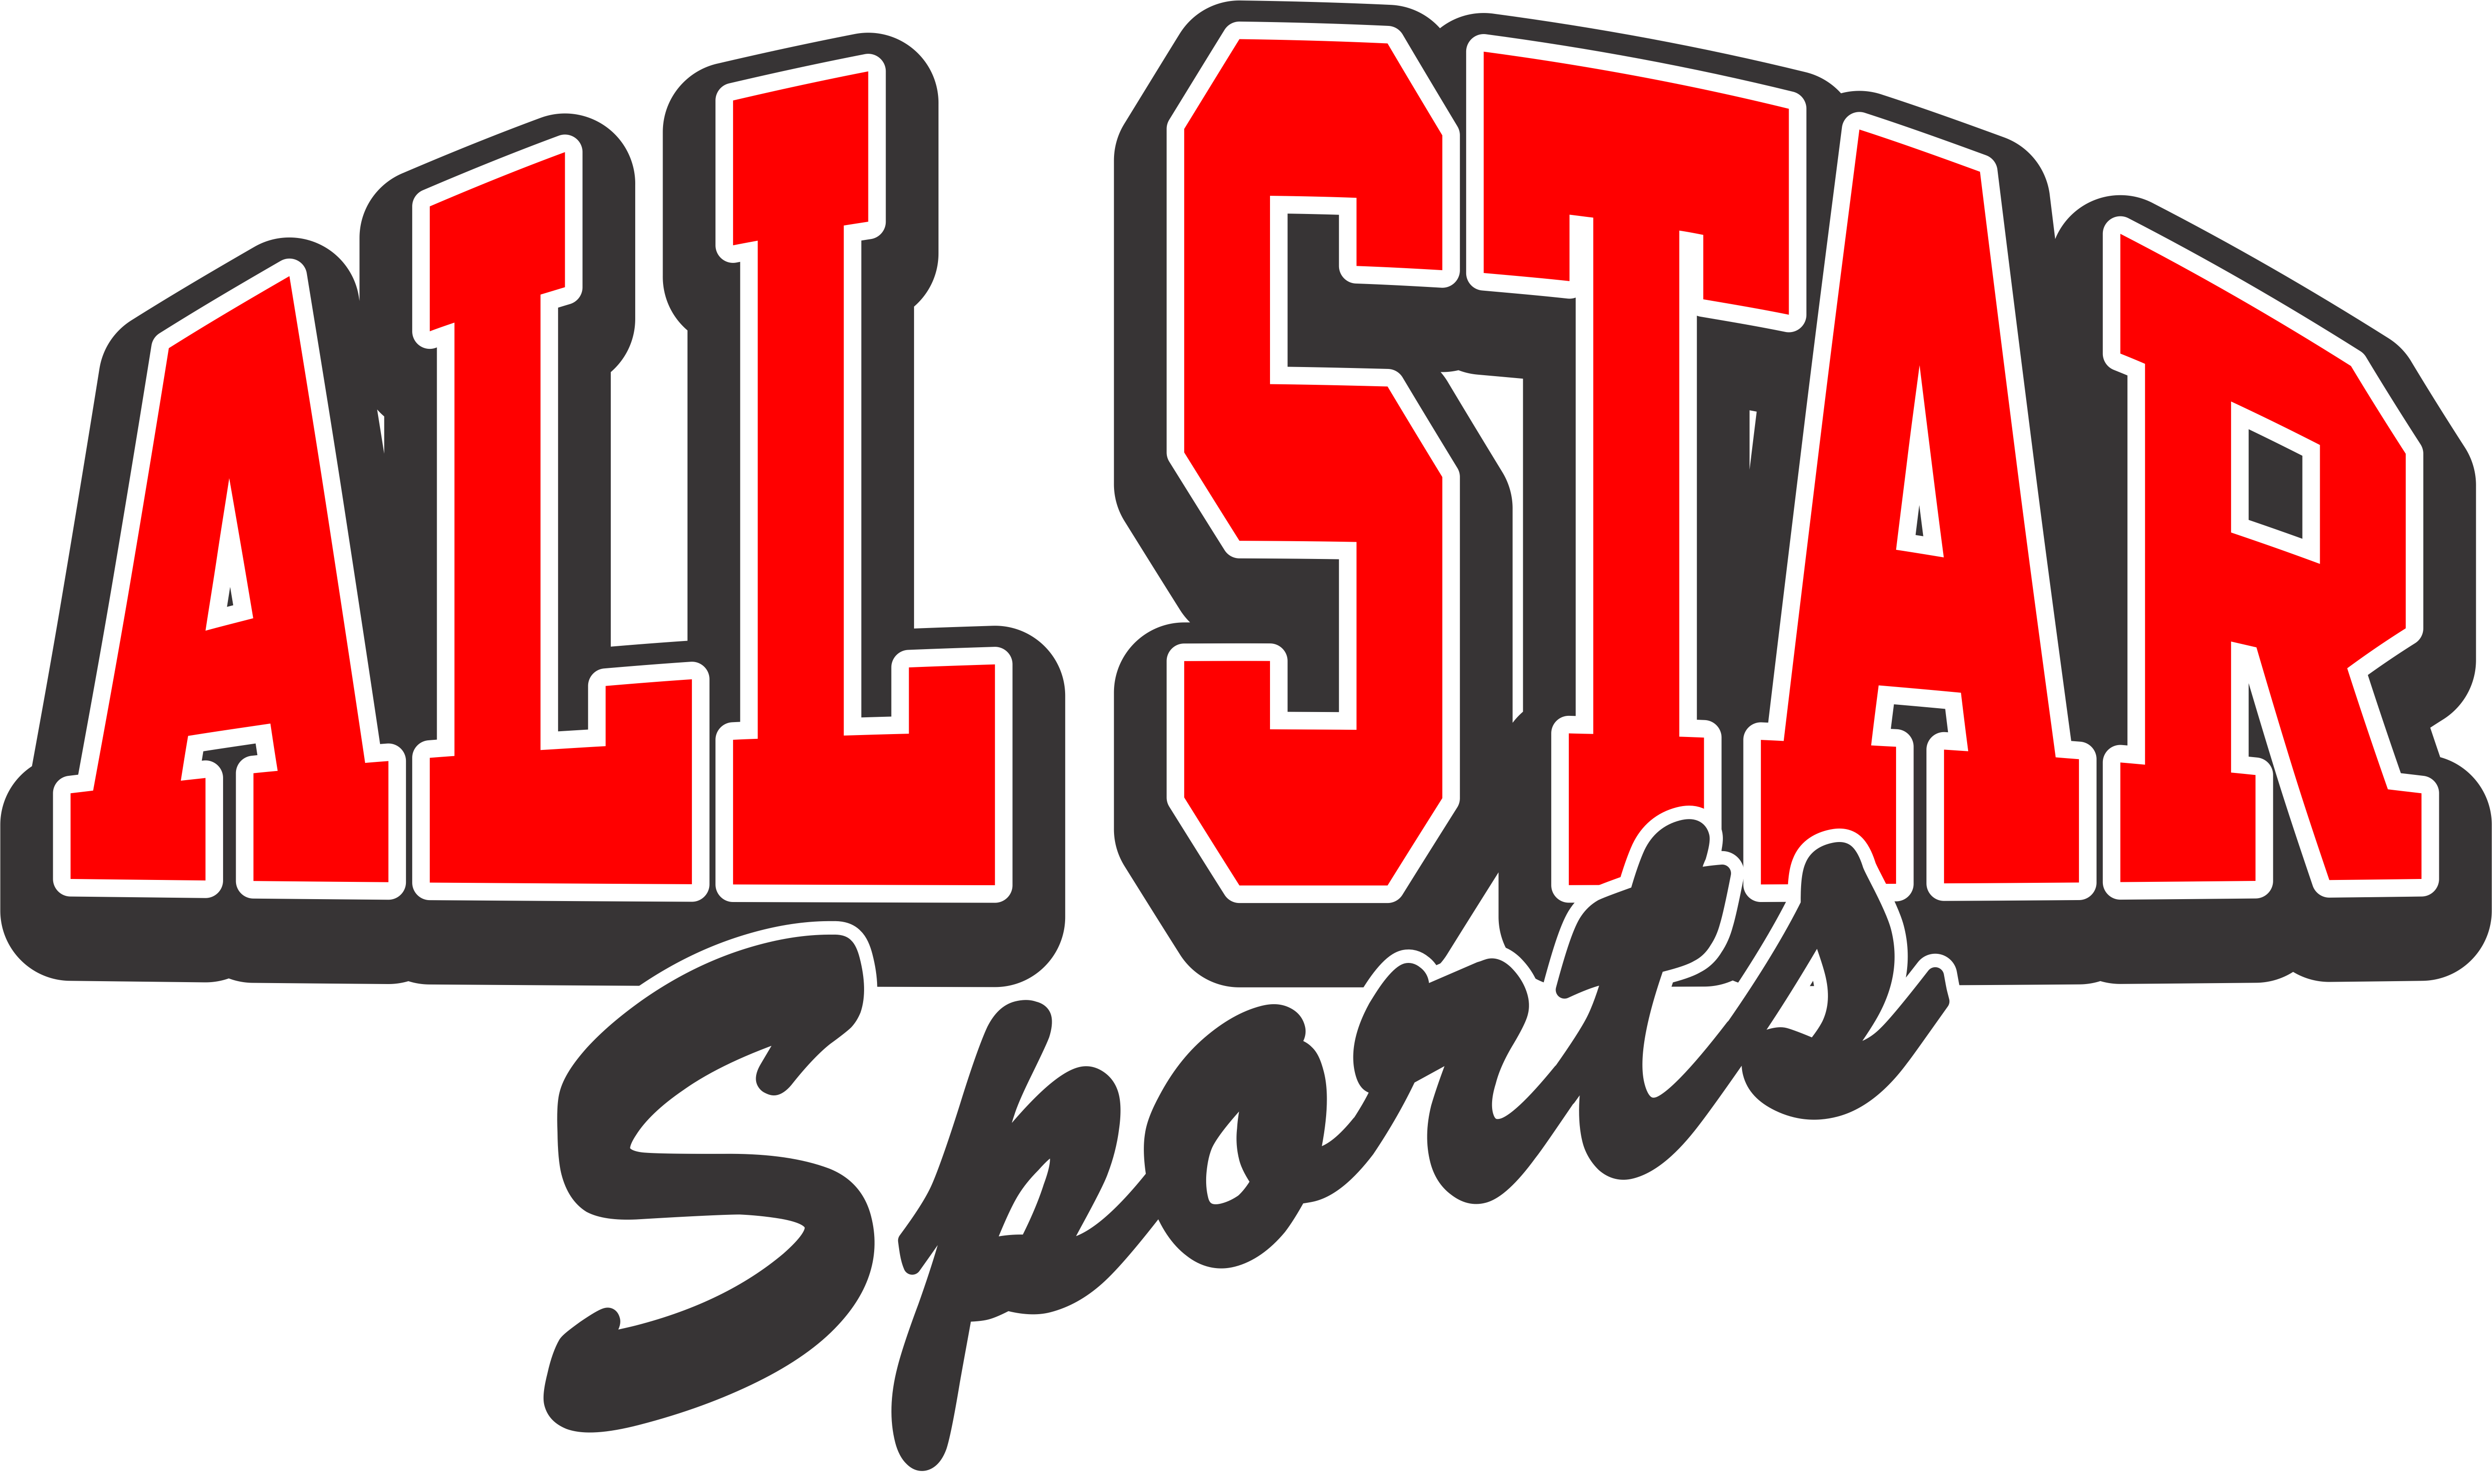 All Star Sports LLC